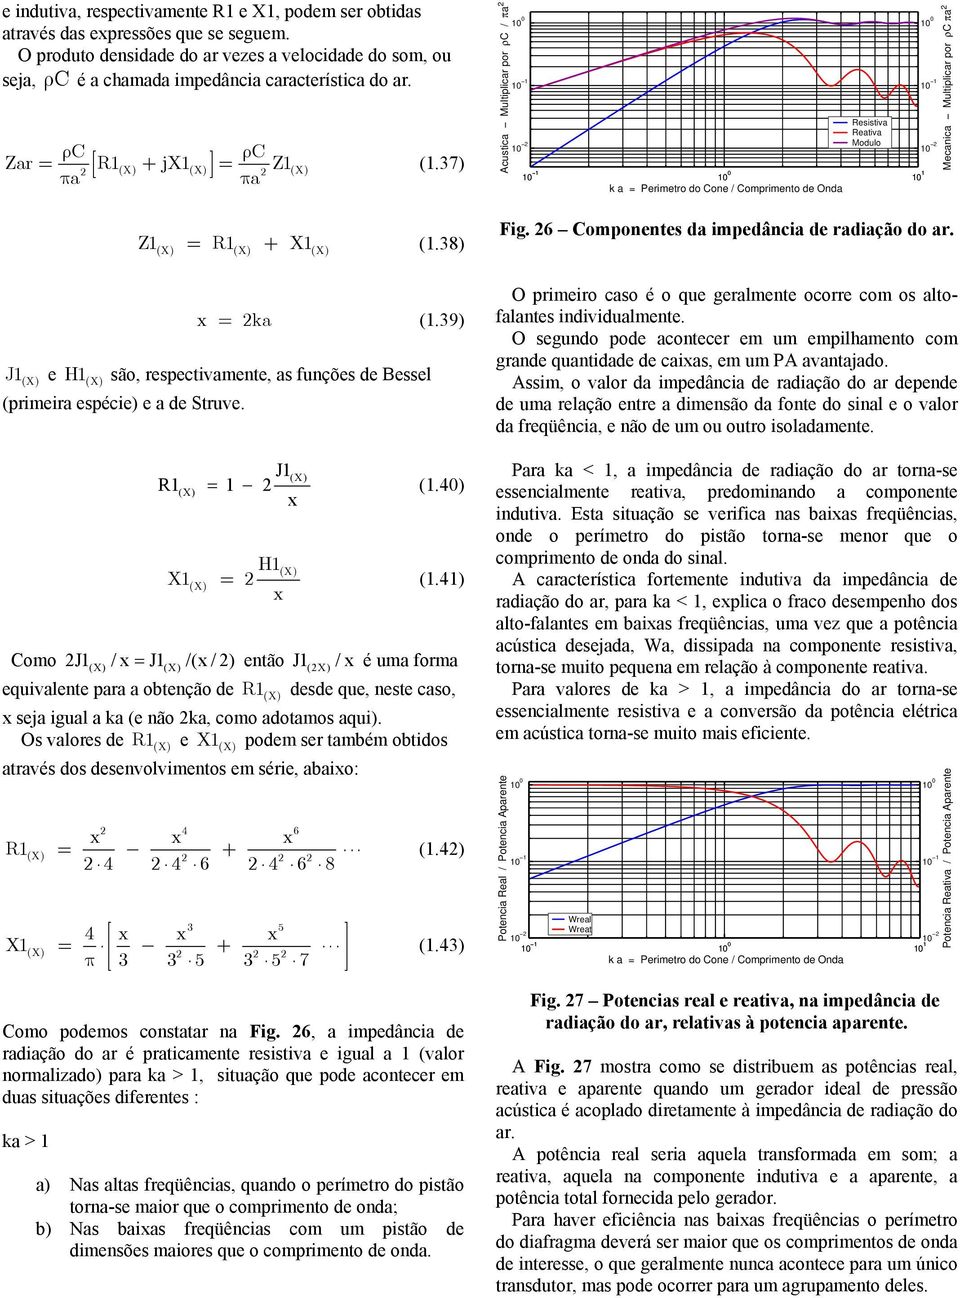 37) Acustica Multiplicar por ρc / πa 1 1 1 1 Resistiva Reativa Modulo 1 1 1 1 1 k a = Perimetro do Cone / Comprimento de Onda 1 1 1 1 Mecanica Multiplicar por ρc πa Z1(X) = R1(X) + X1 (X) (1.